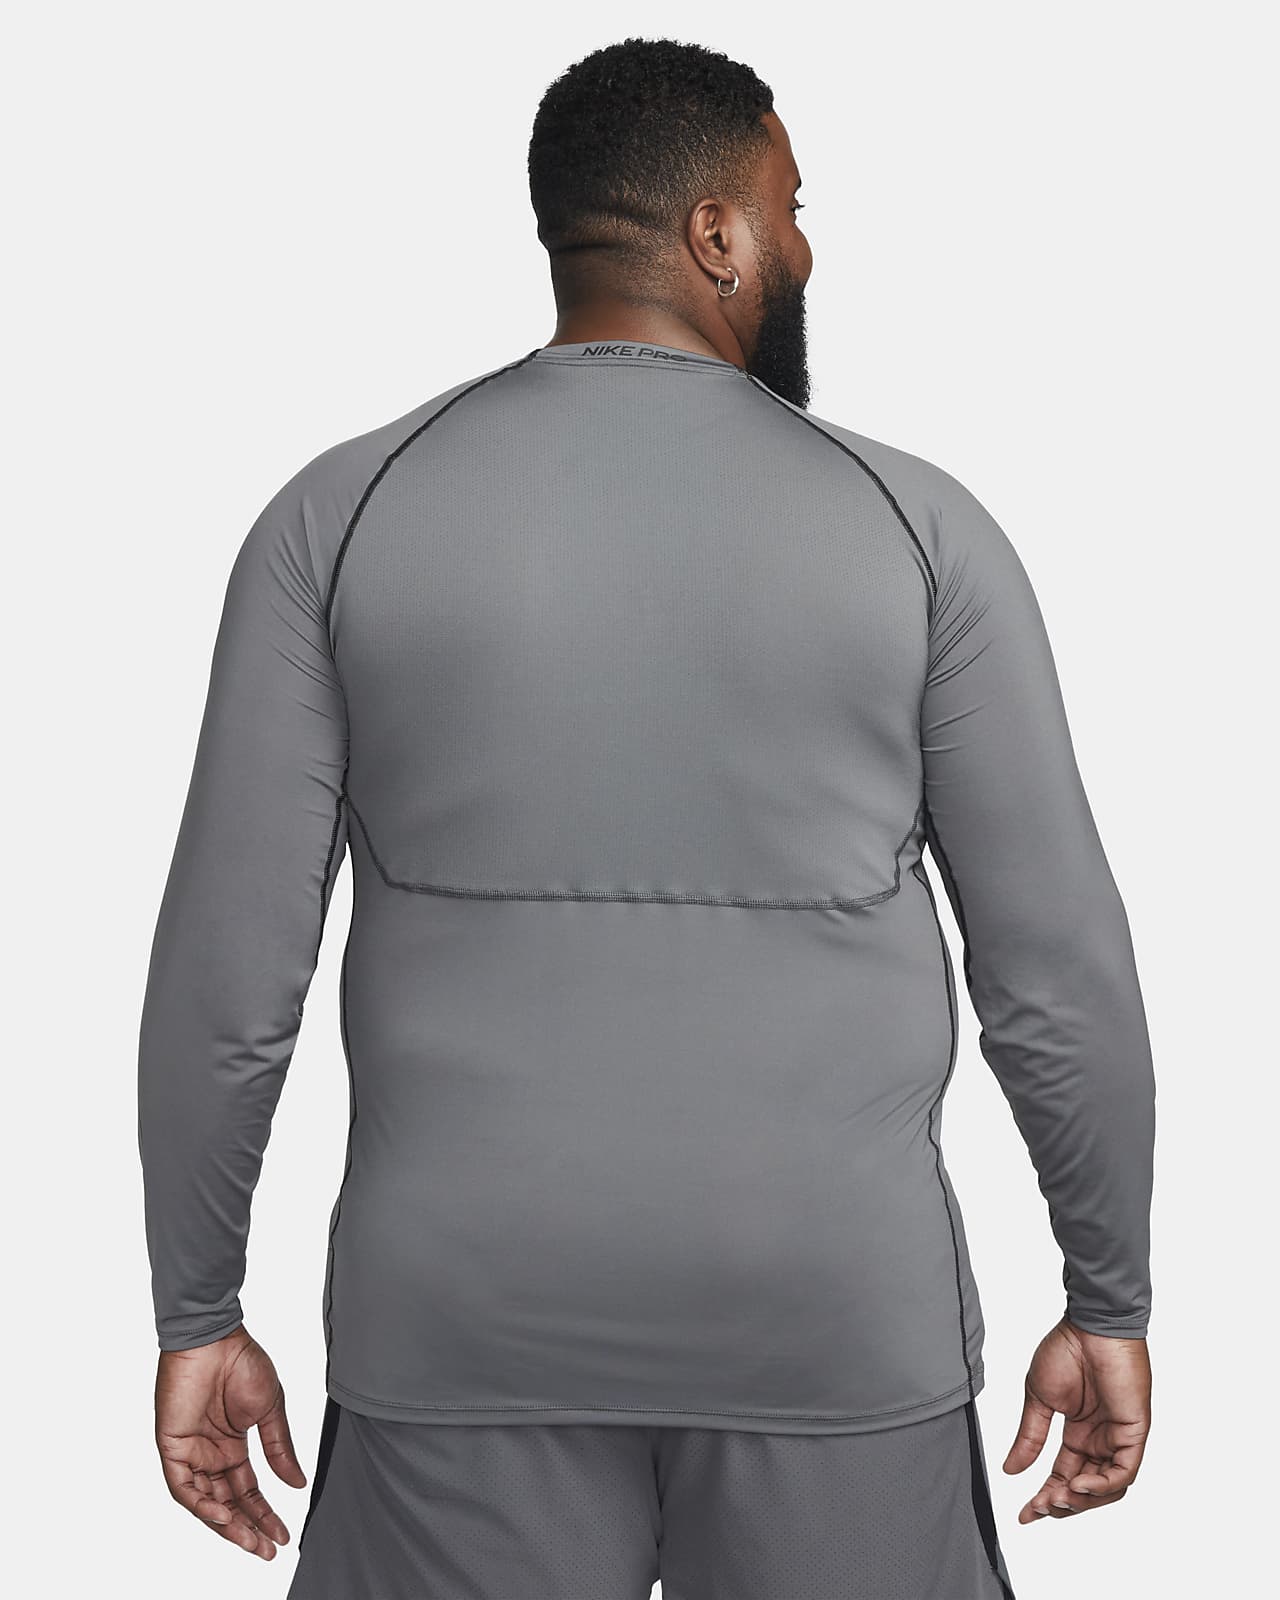 Nike Pro Men's Fit Long-Sleeve Nike.com